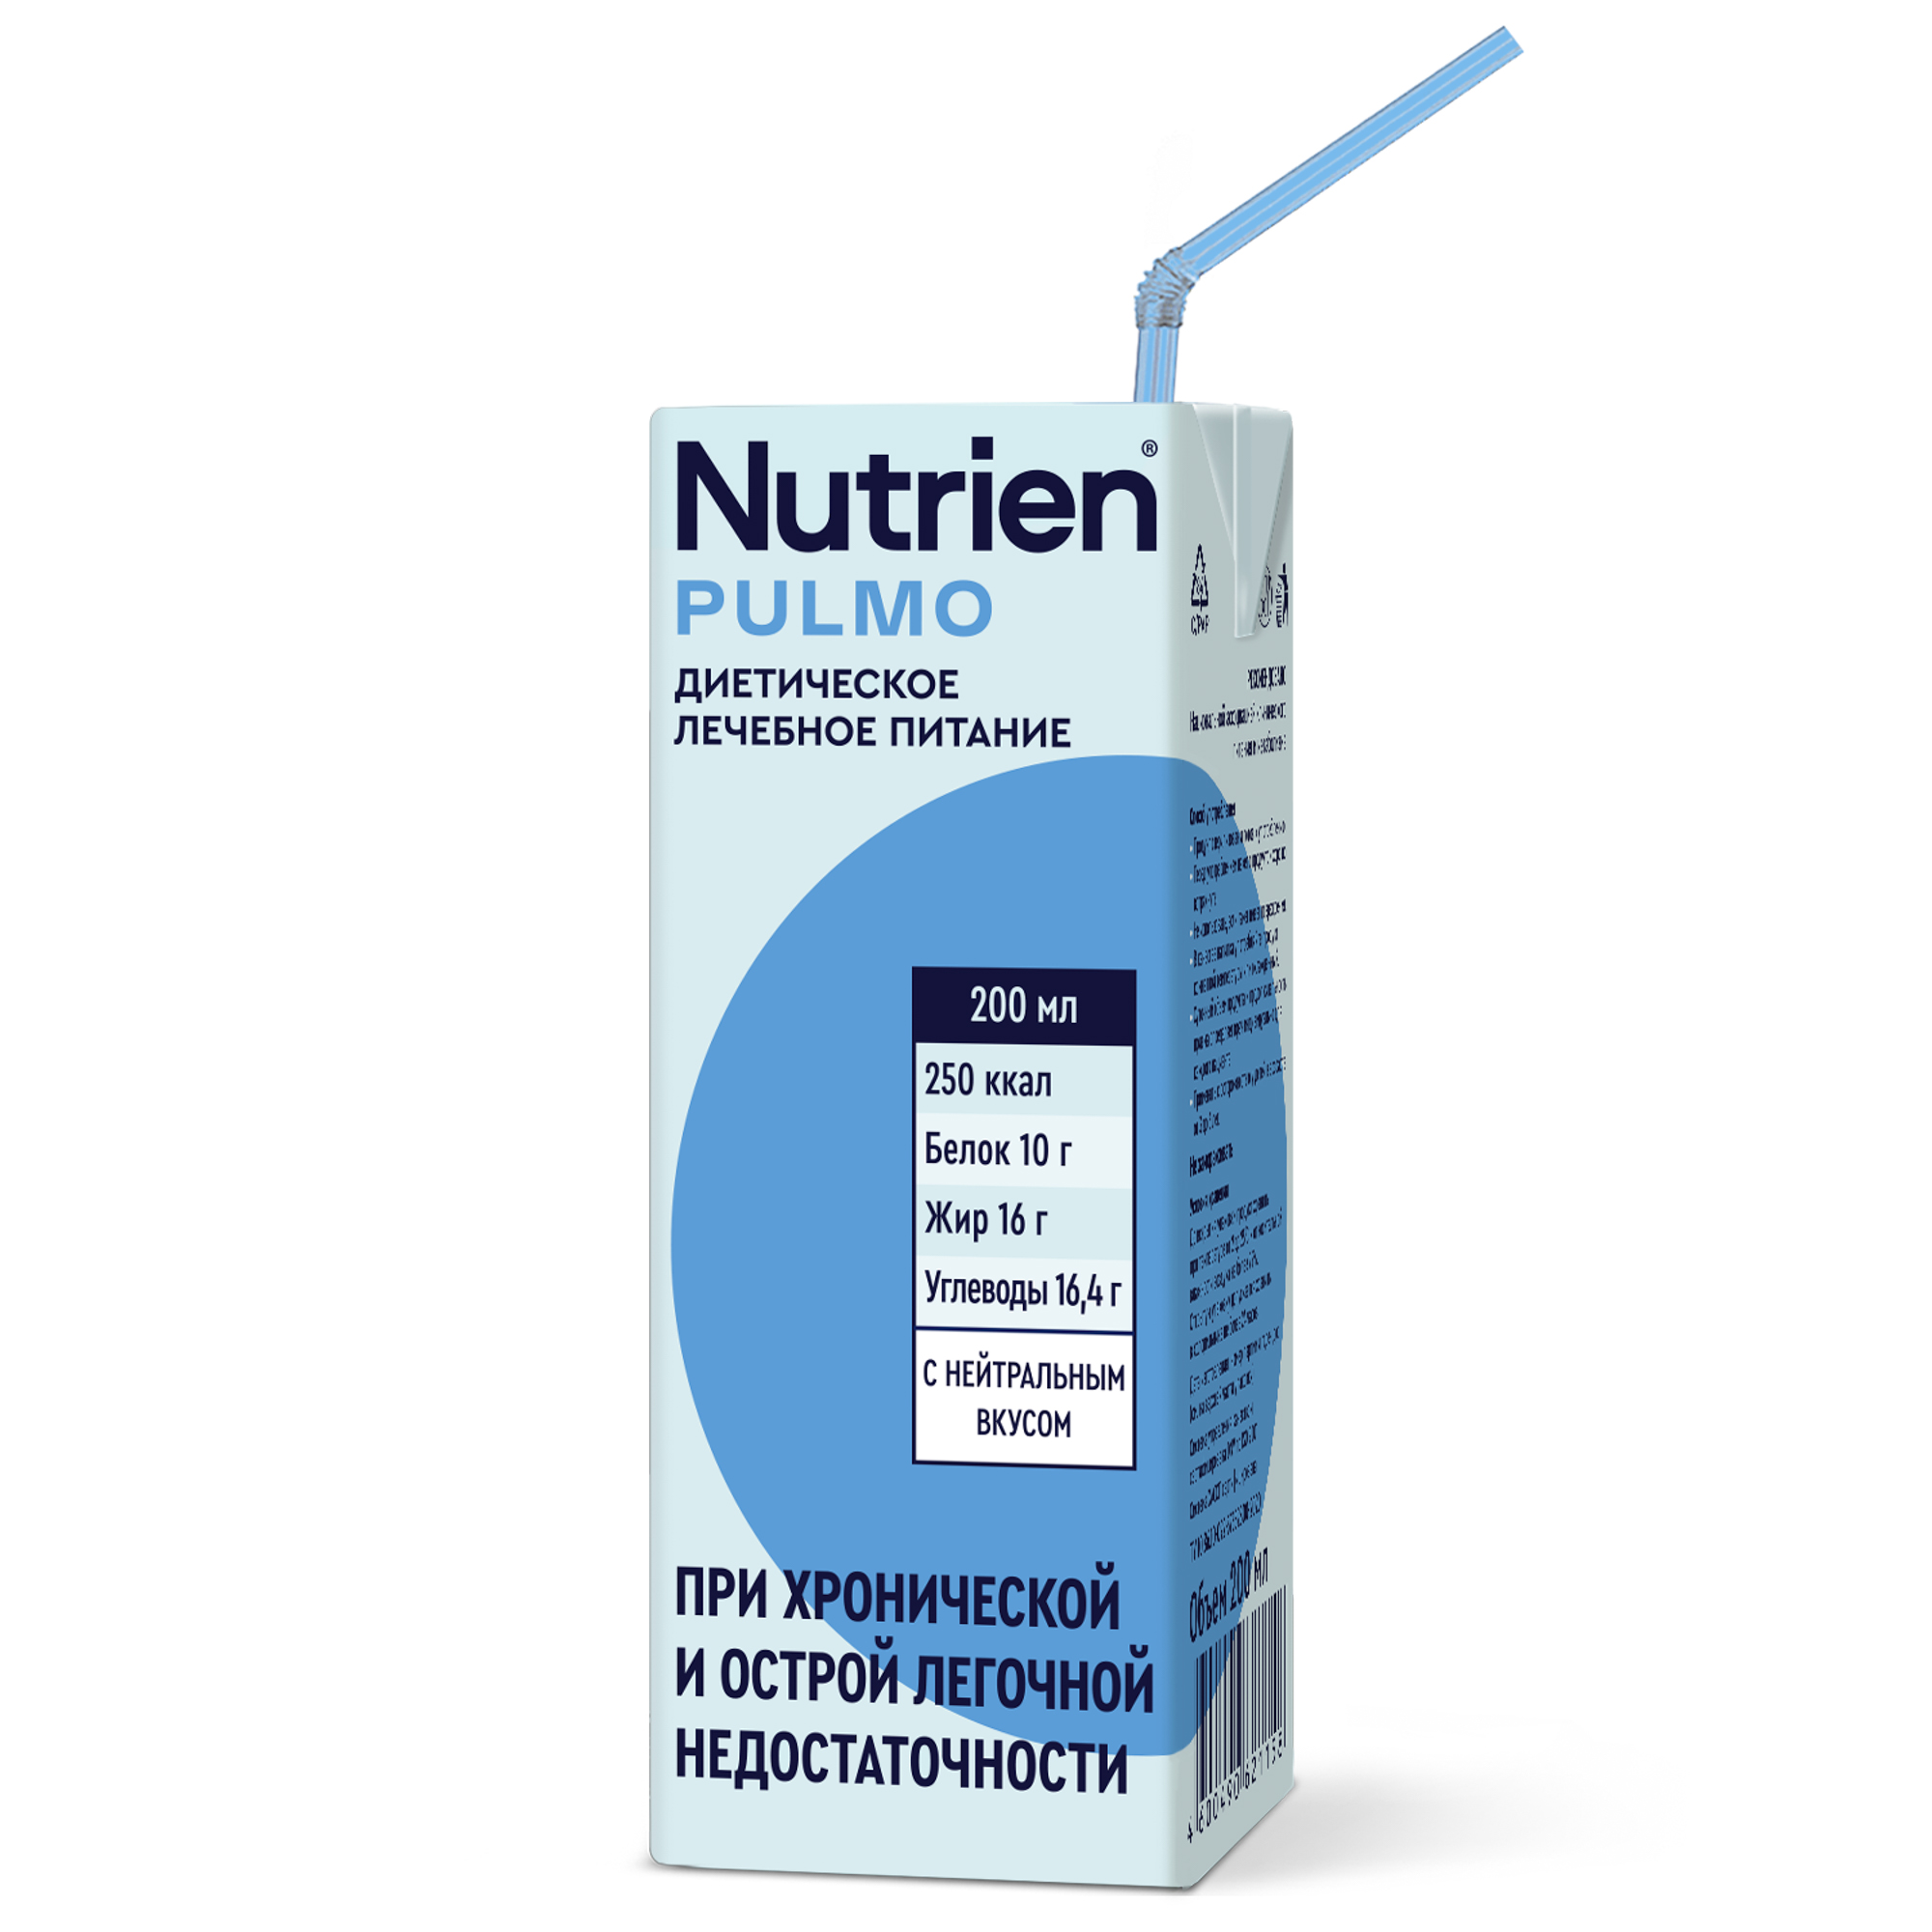 Купить Лечебное питание Nutrien Pulmo с нейтральным вкусом 200 мл